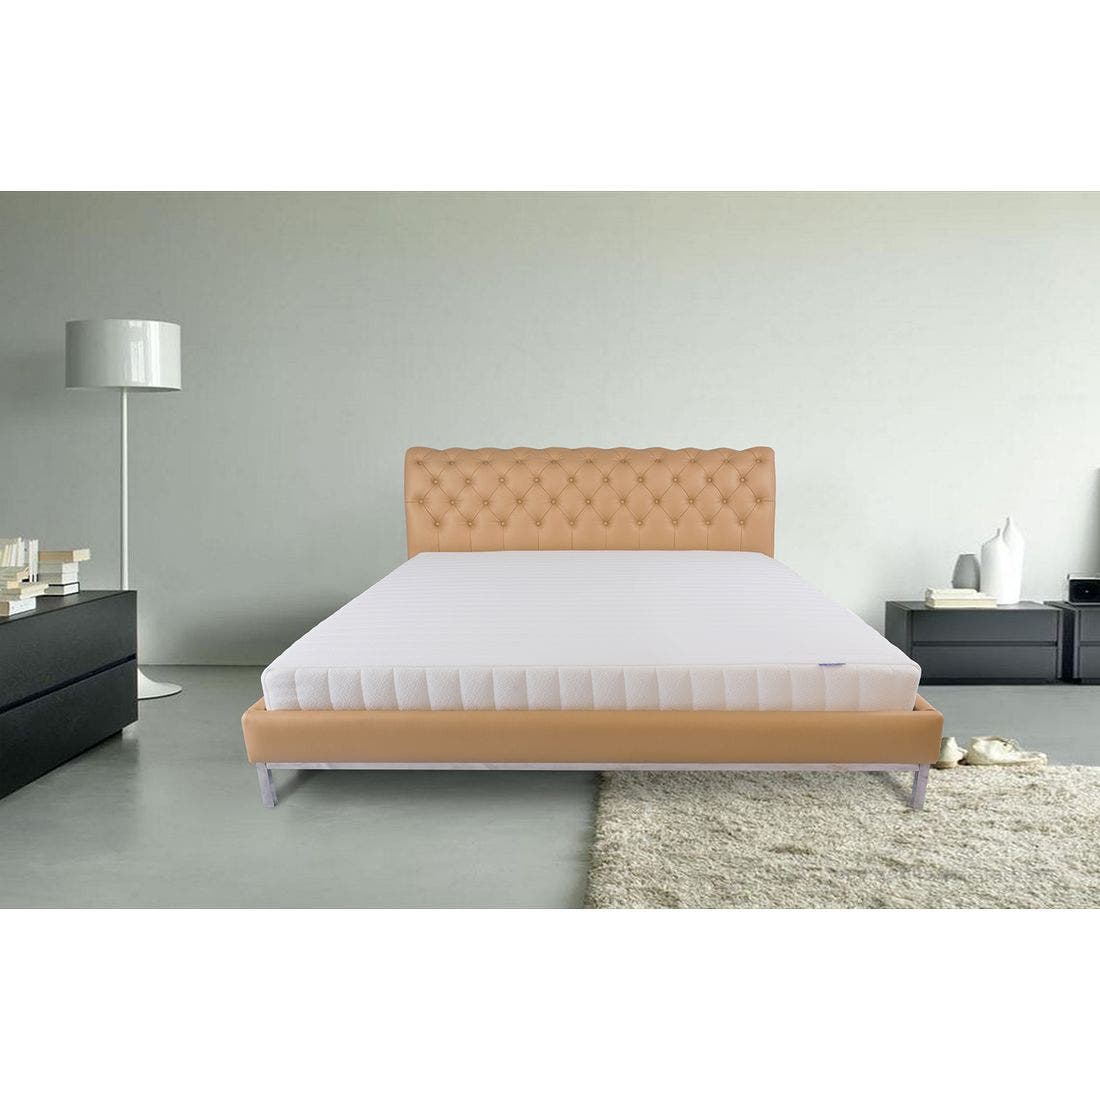 39015047-mattress-bedding-mattresses-latex-mattresses-31